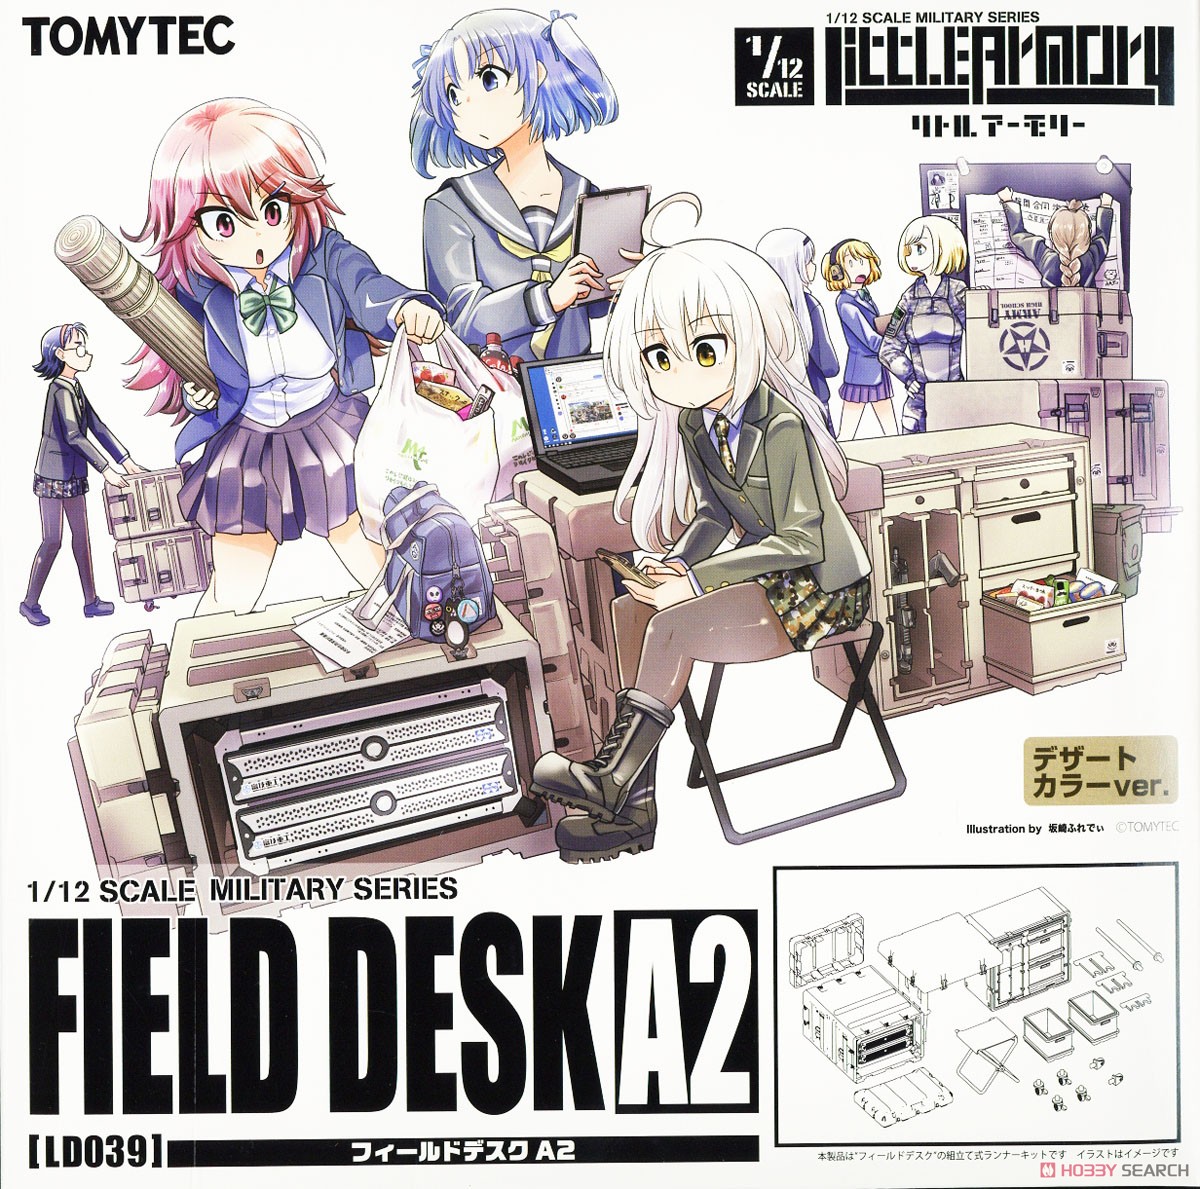 1/12 Little Armory (LD039) Field Desk A2 (Plastic model) Package1